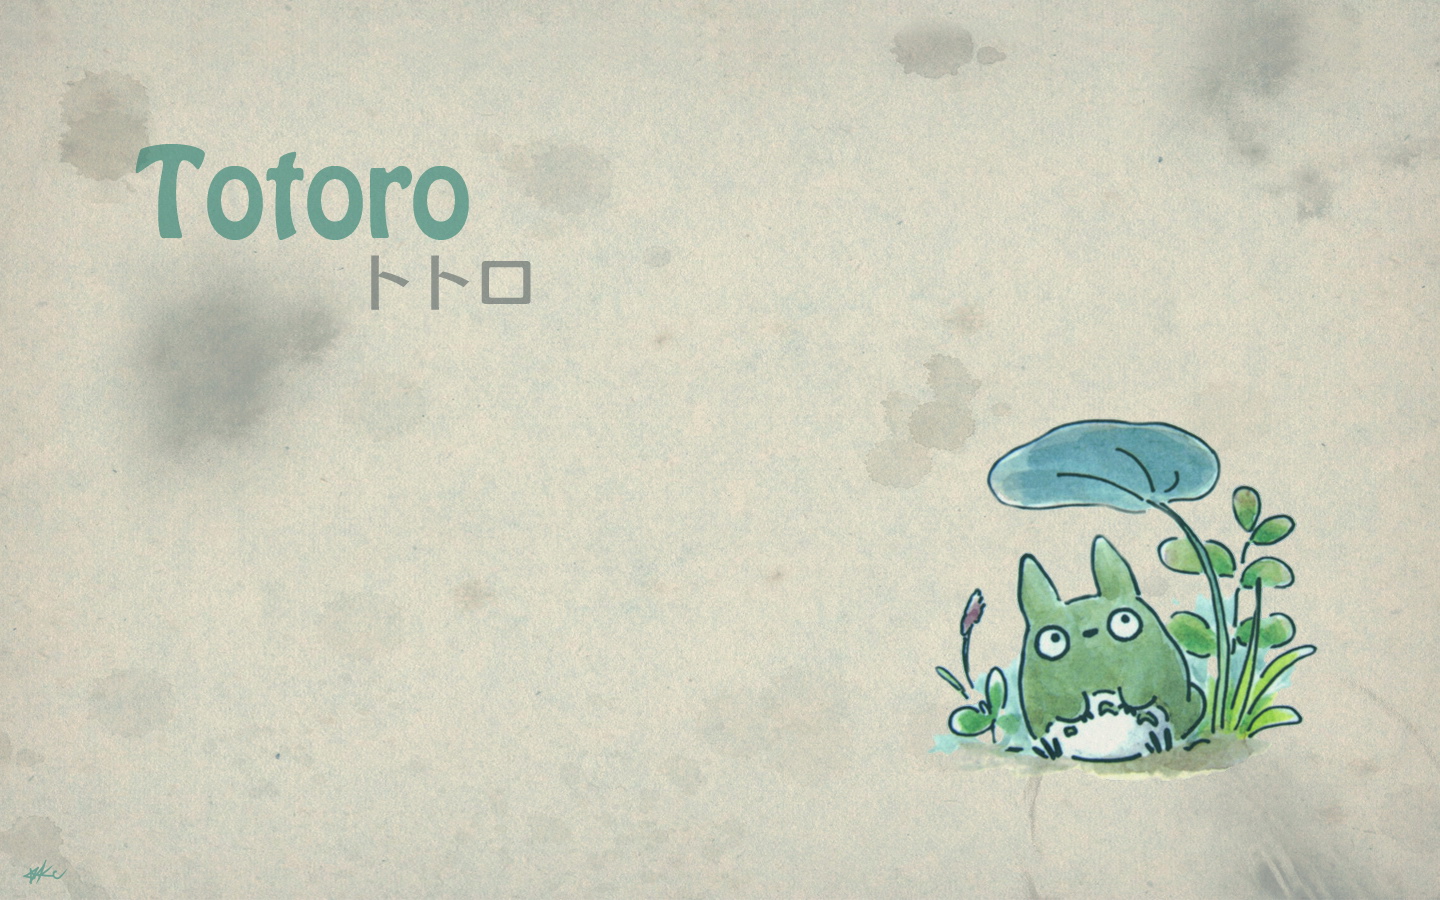 壁纸1440x900Totoro 龙猫 手绘简约版 壁纸4壁纸 Totoro（龙猫）壁纸 Totoro（龙猫）图片 Totoro（龙猫）素材 绘画壁纸 绘画图库 绘画图片素材桌面壁纸